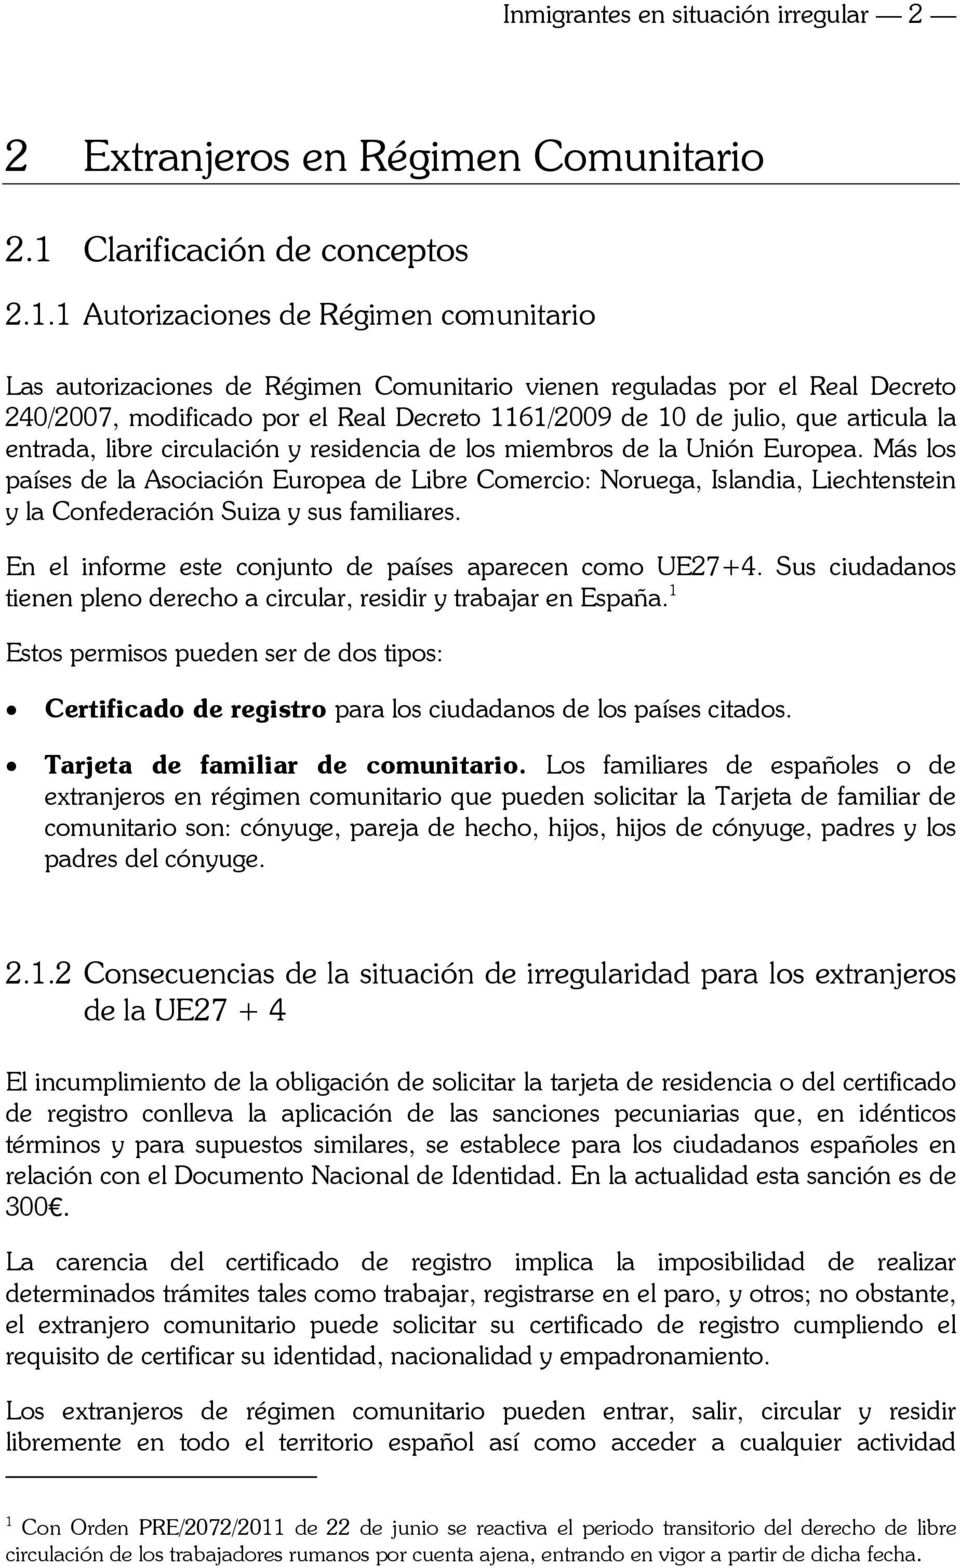 1 Autorizaciones de Régimen comunitario Las autorizaciones de Régimen Comunitario vienen reguladas por el Real Decreto 240/2007, modificado por el Real Decreto 1161/2009 de 10 de julio, que articula